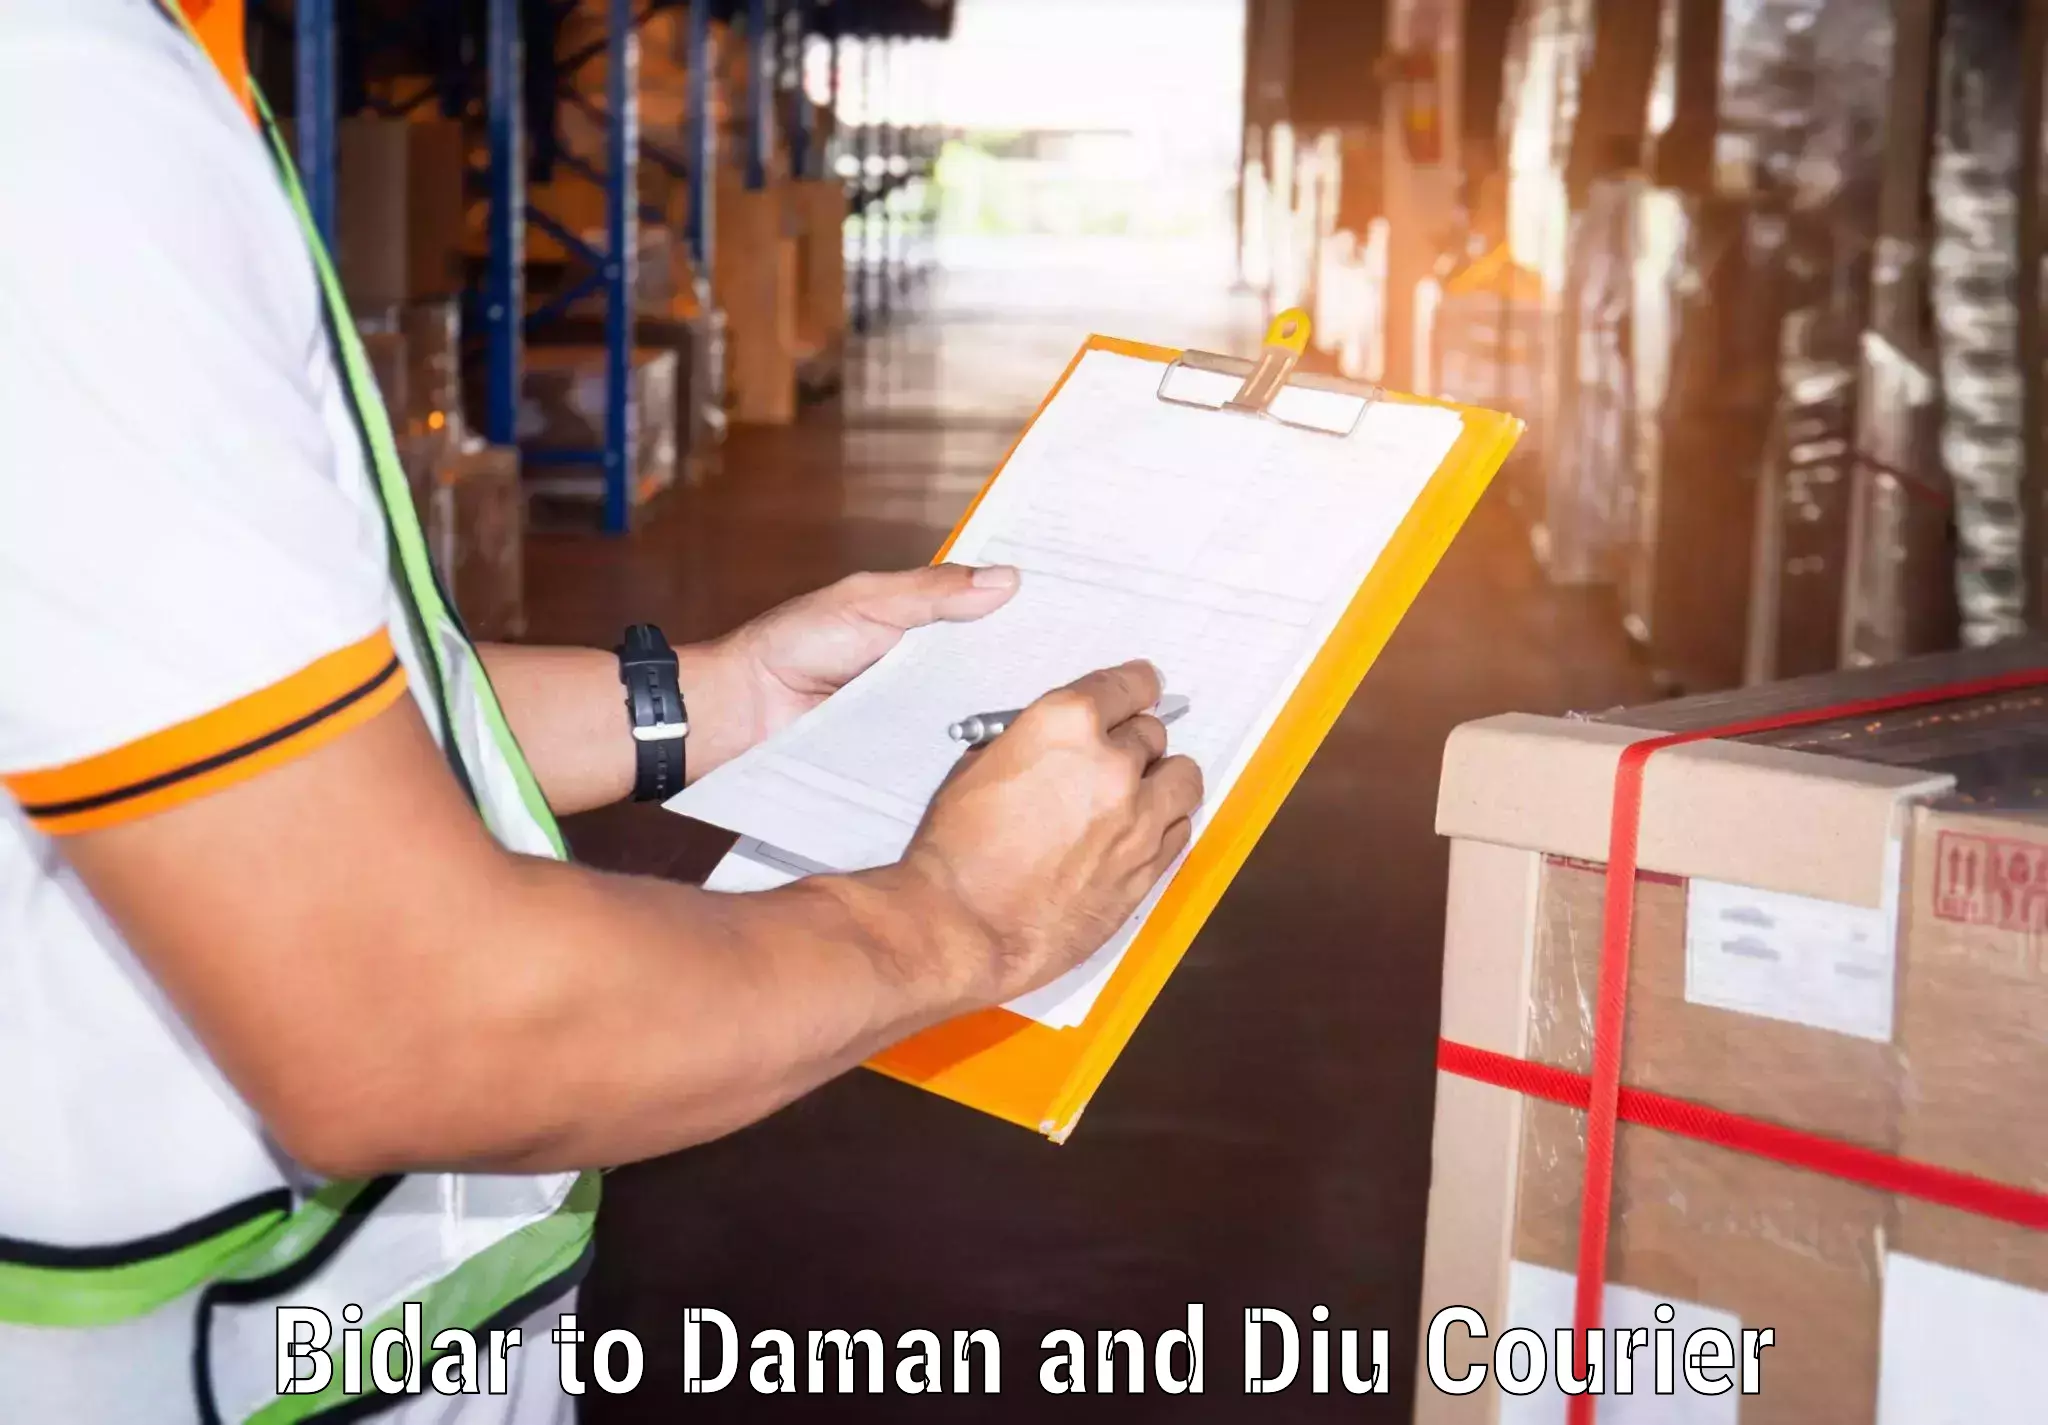 Reliable courier service Bidar to Daman and Diu